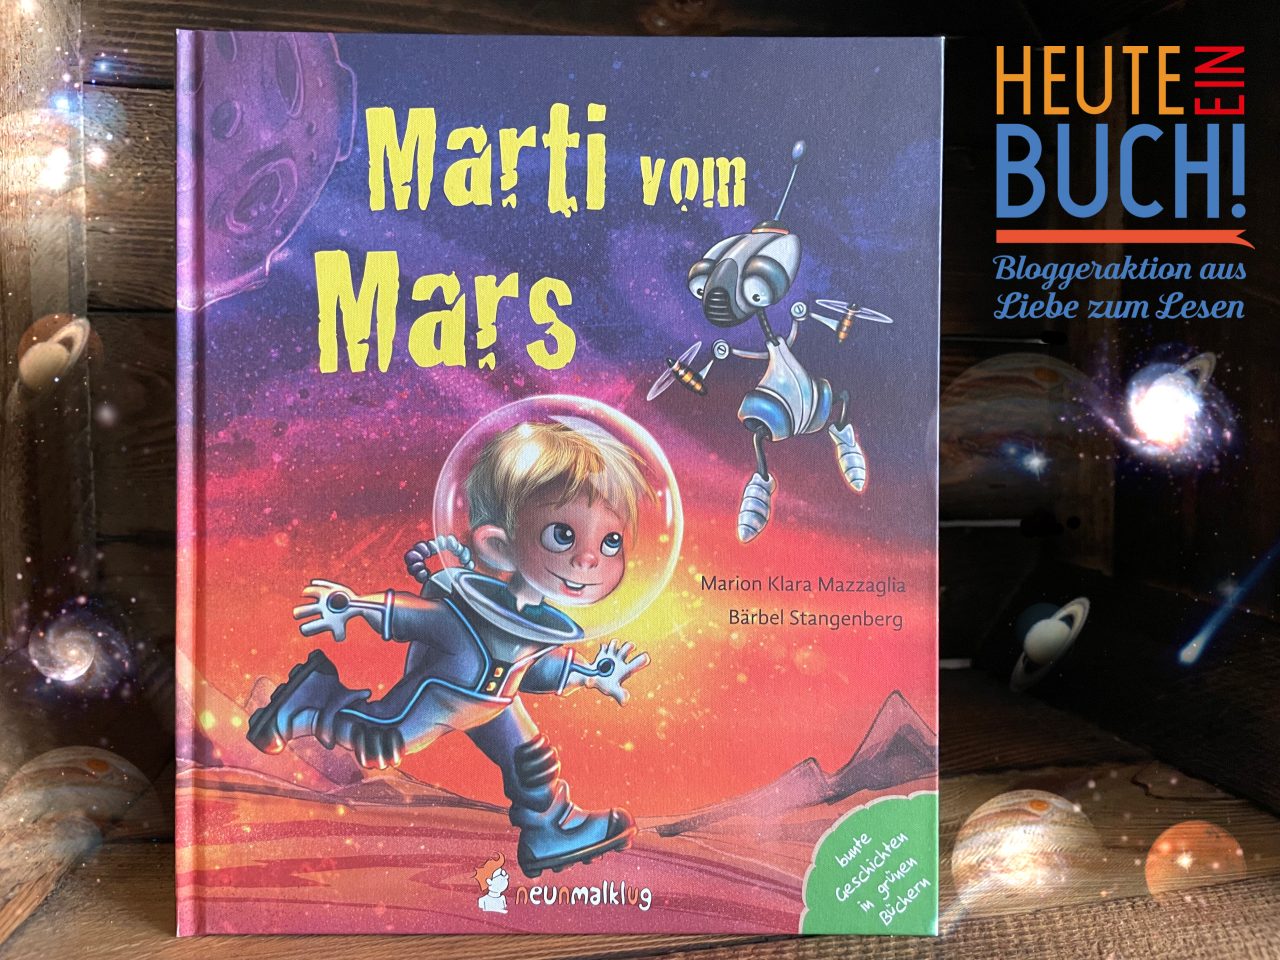 Das Sachkinderbuch "Marti vom Mars" in einer Holzkiste stehend mit dem "Heute ein Buch"-Logo und Planetenglimmer drum